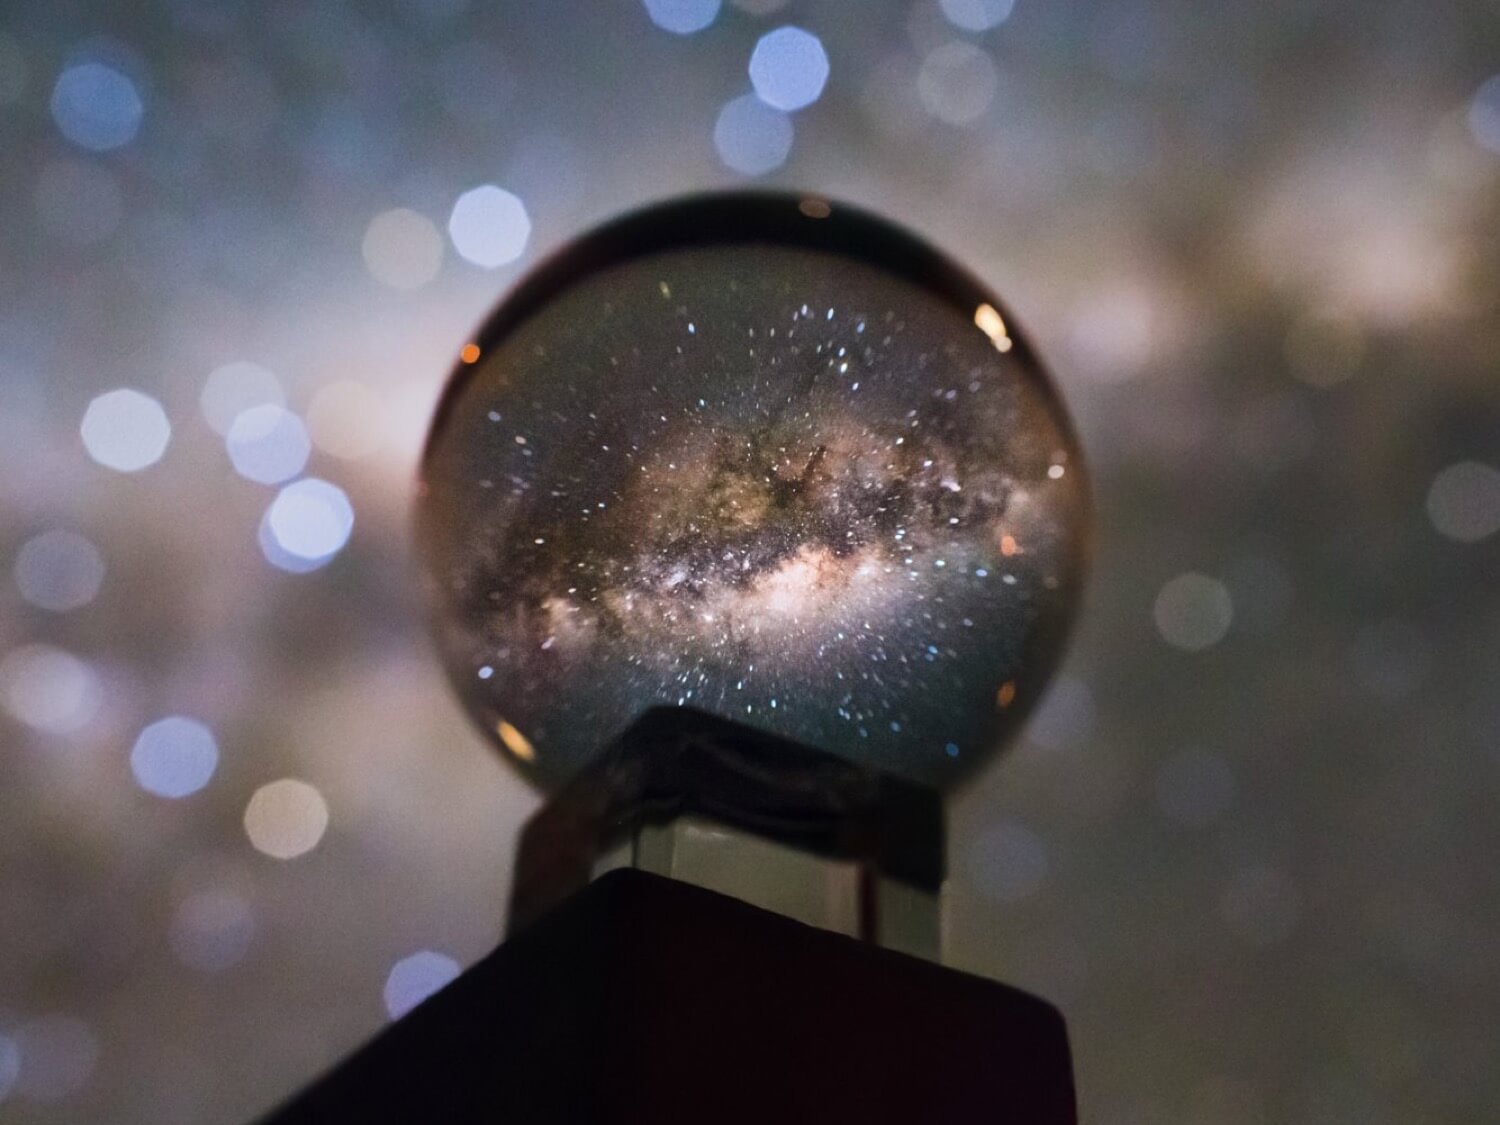 Zdjęcie Drogi Mlecznej poprzez kryształową kulę wygląda oszałamiająco